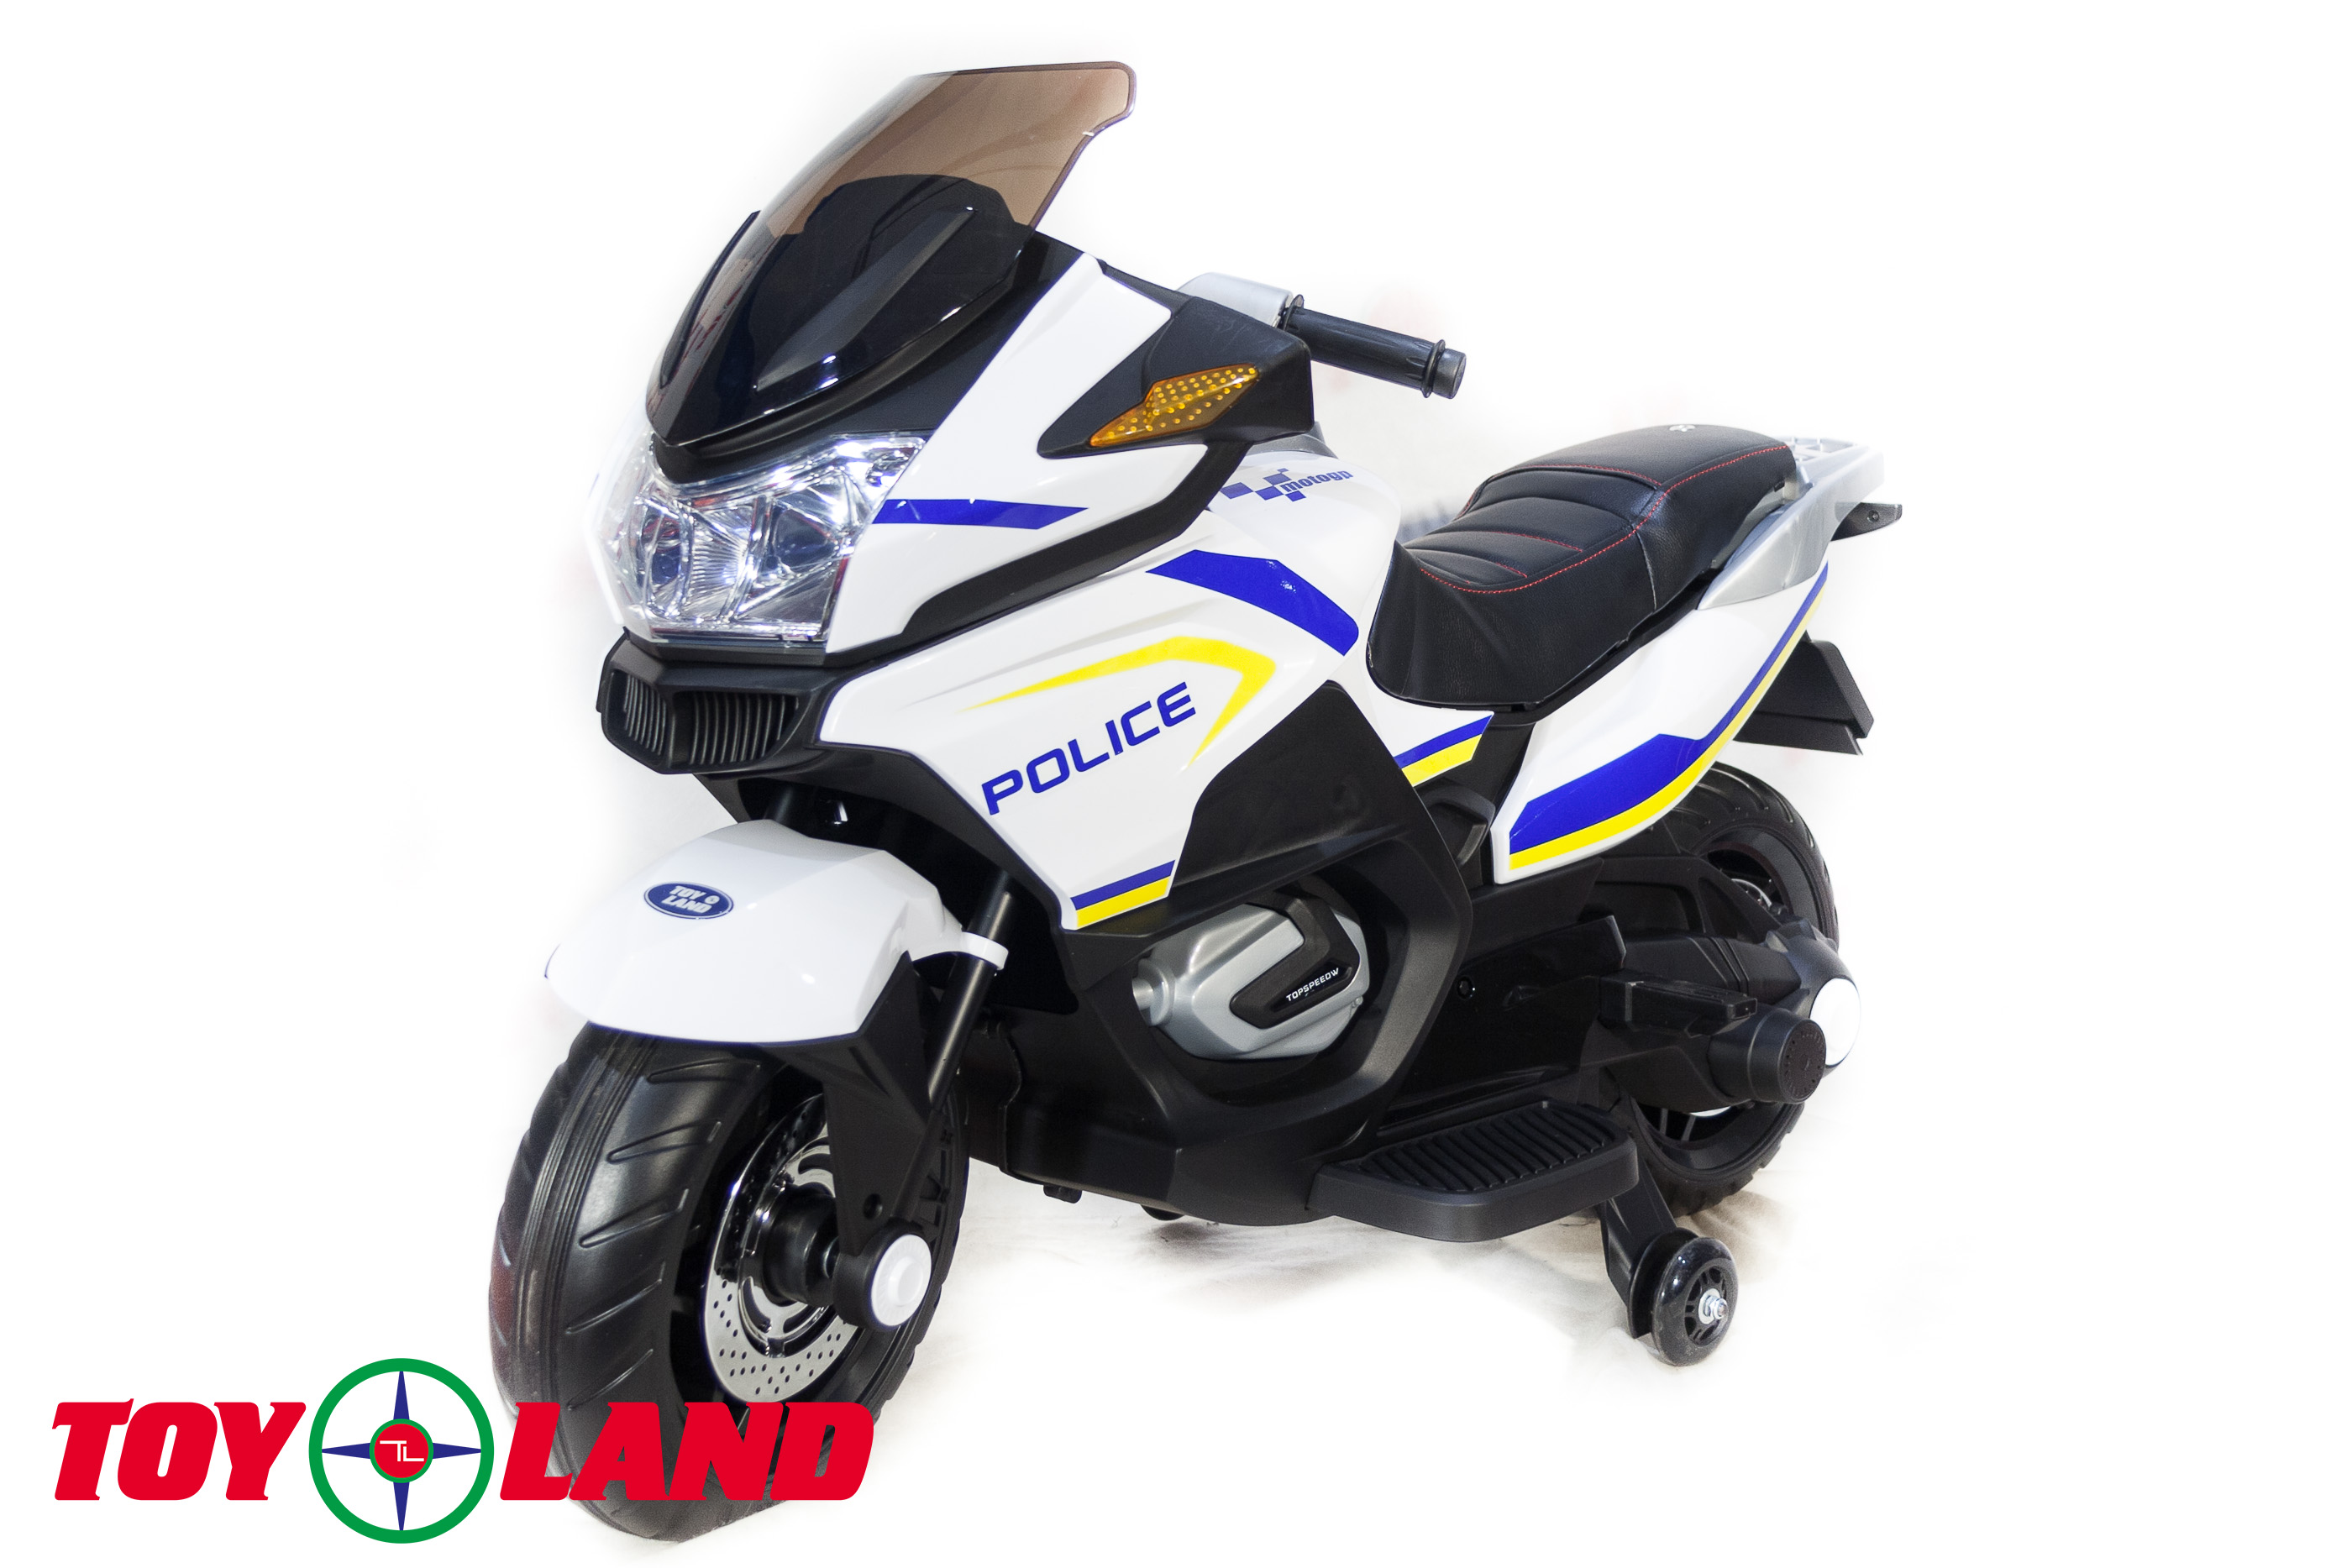 Двухместный мотоцикл Moto ХМХ 609 (Полиция) XMX 609